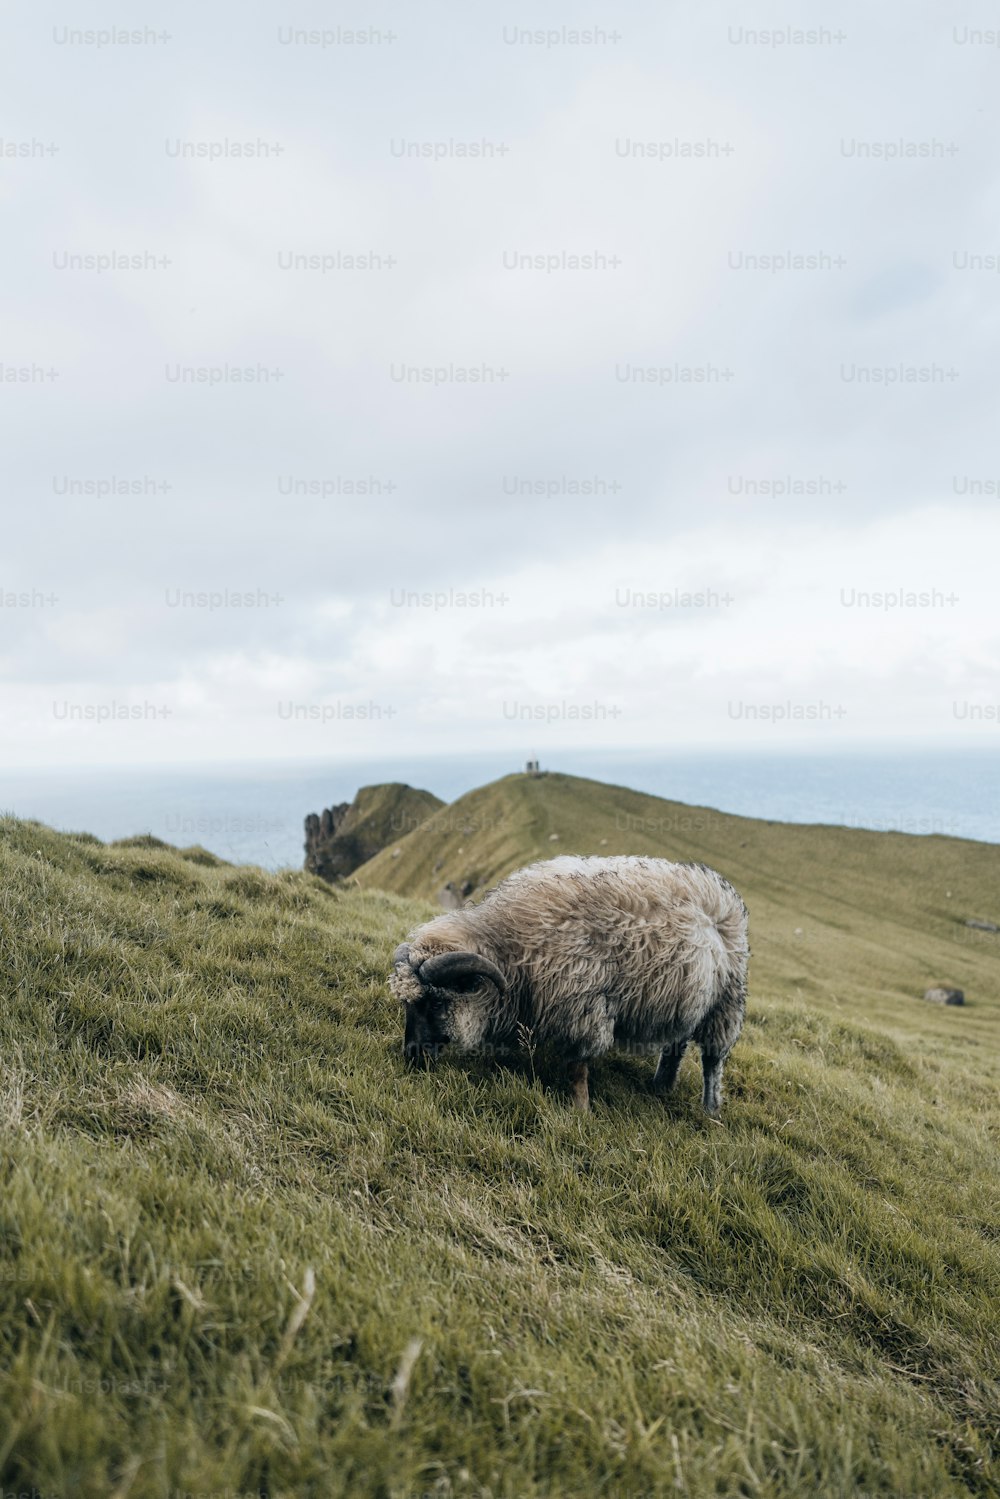 Una oveja pastando en un campo cubierto de hierba en un día nublado